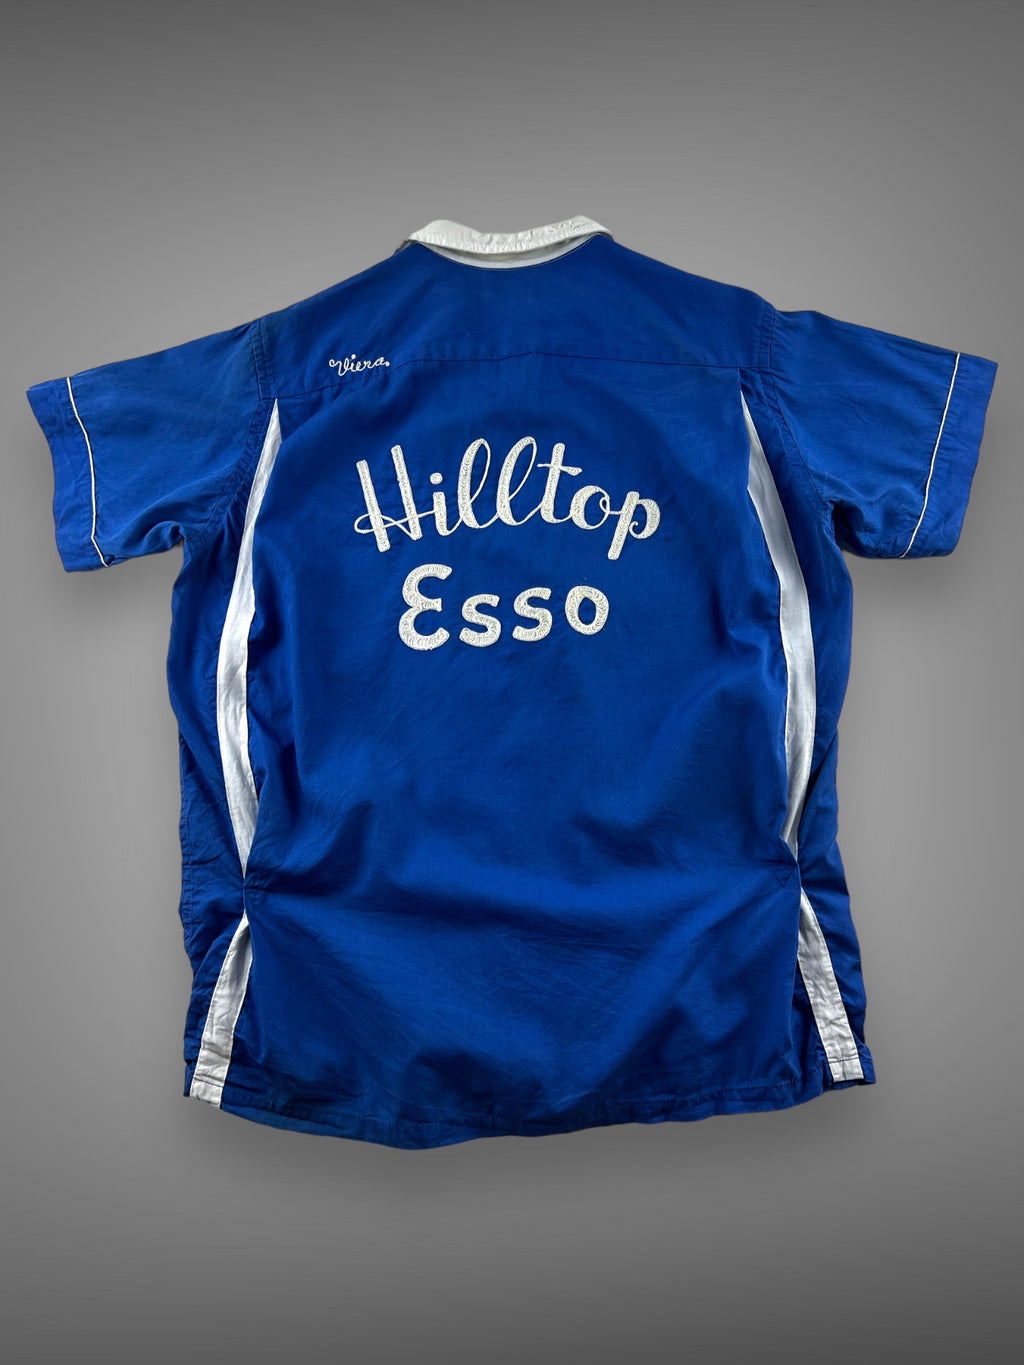 60s Hilton chain stitched bowling shirt Hilltop Esso L